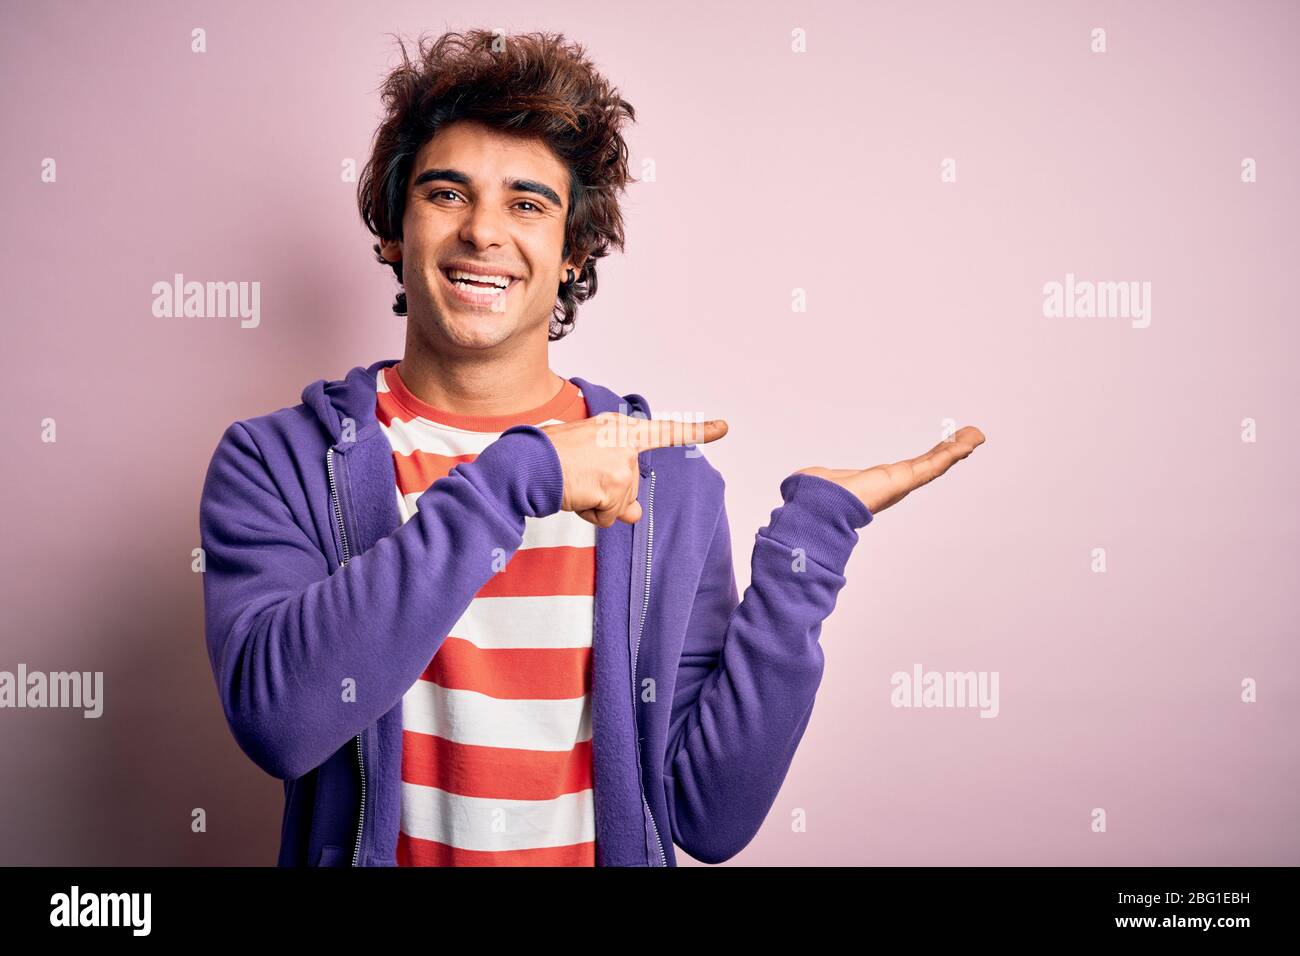 Jeune homme portant un t-shirt rayé et un sueur violet sur un fond rose isolé étonné et souriant à l'appareil photo tout en présentant avec la main et p Banque D'Images